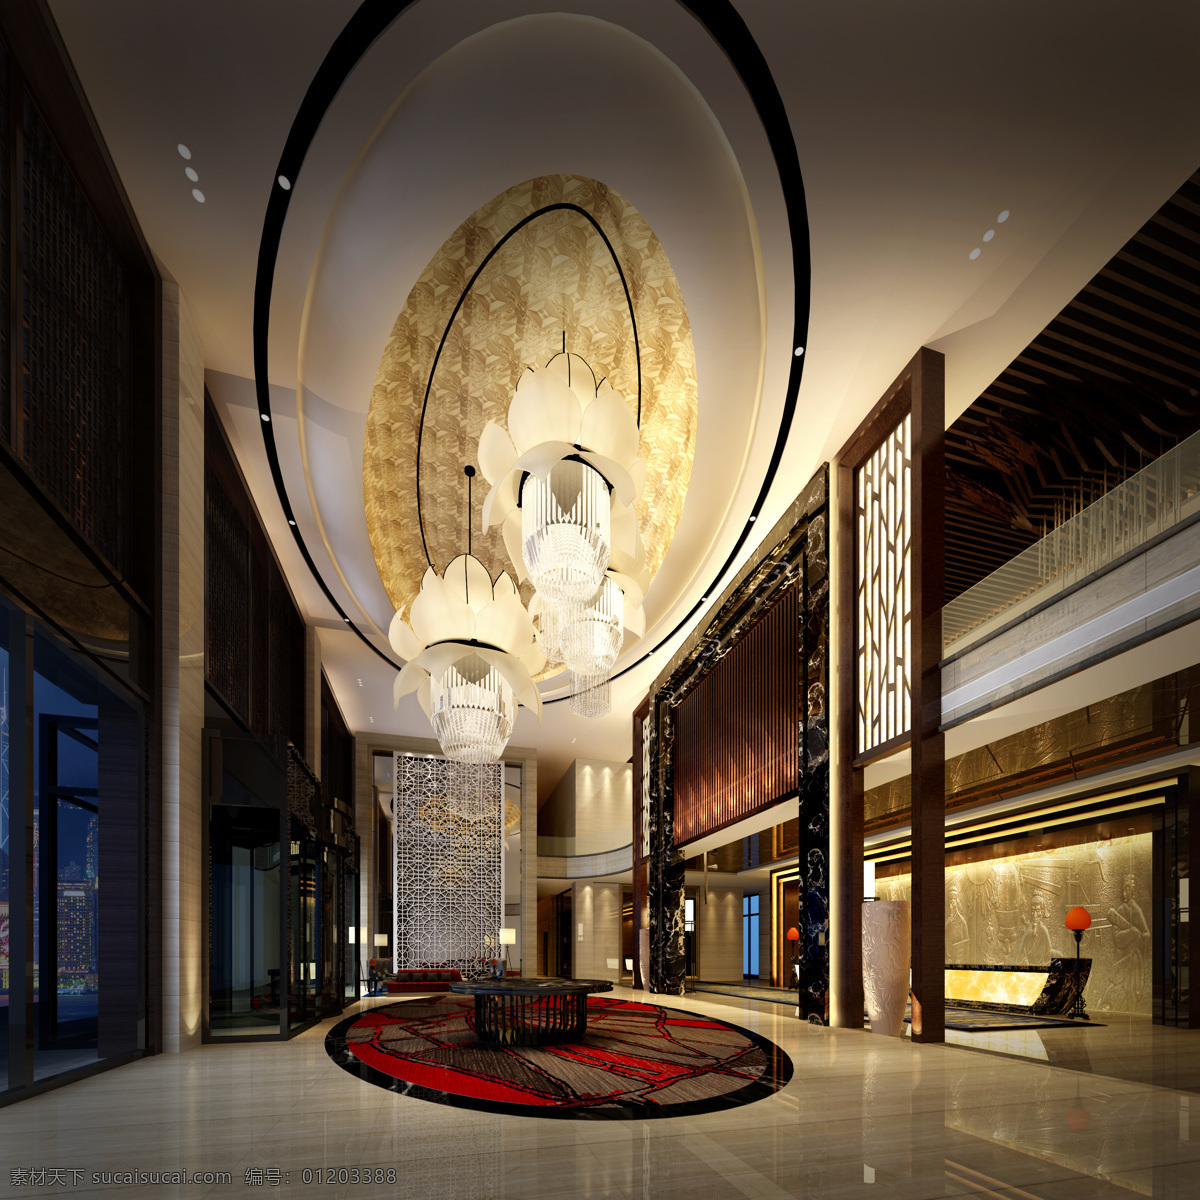 酒店大堂 瓷砖地板 天花灯光 水晶灯吊顶 雕塑 沙发 环境设计 室内设计